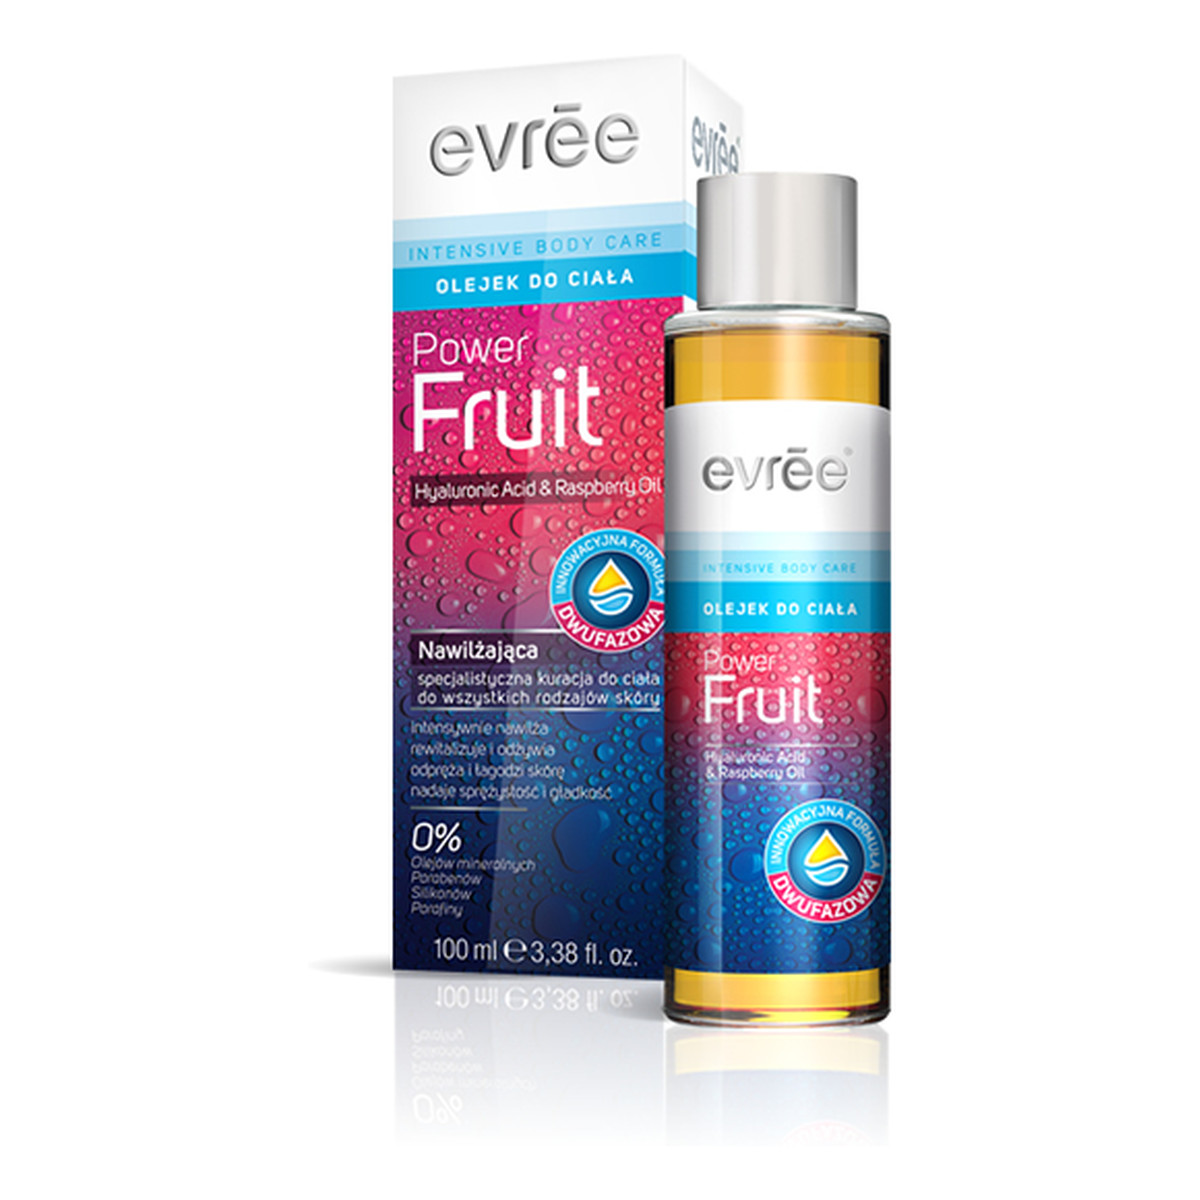 Evree Intensive Body Care Power Fruit Olejek Do Ciała Nawilżająca Specjalistyczna Kuracja Do Ciała 100ml